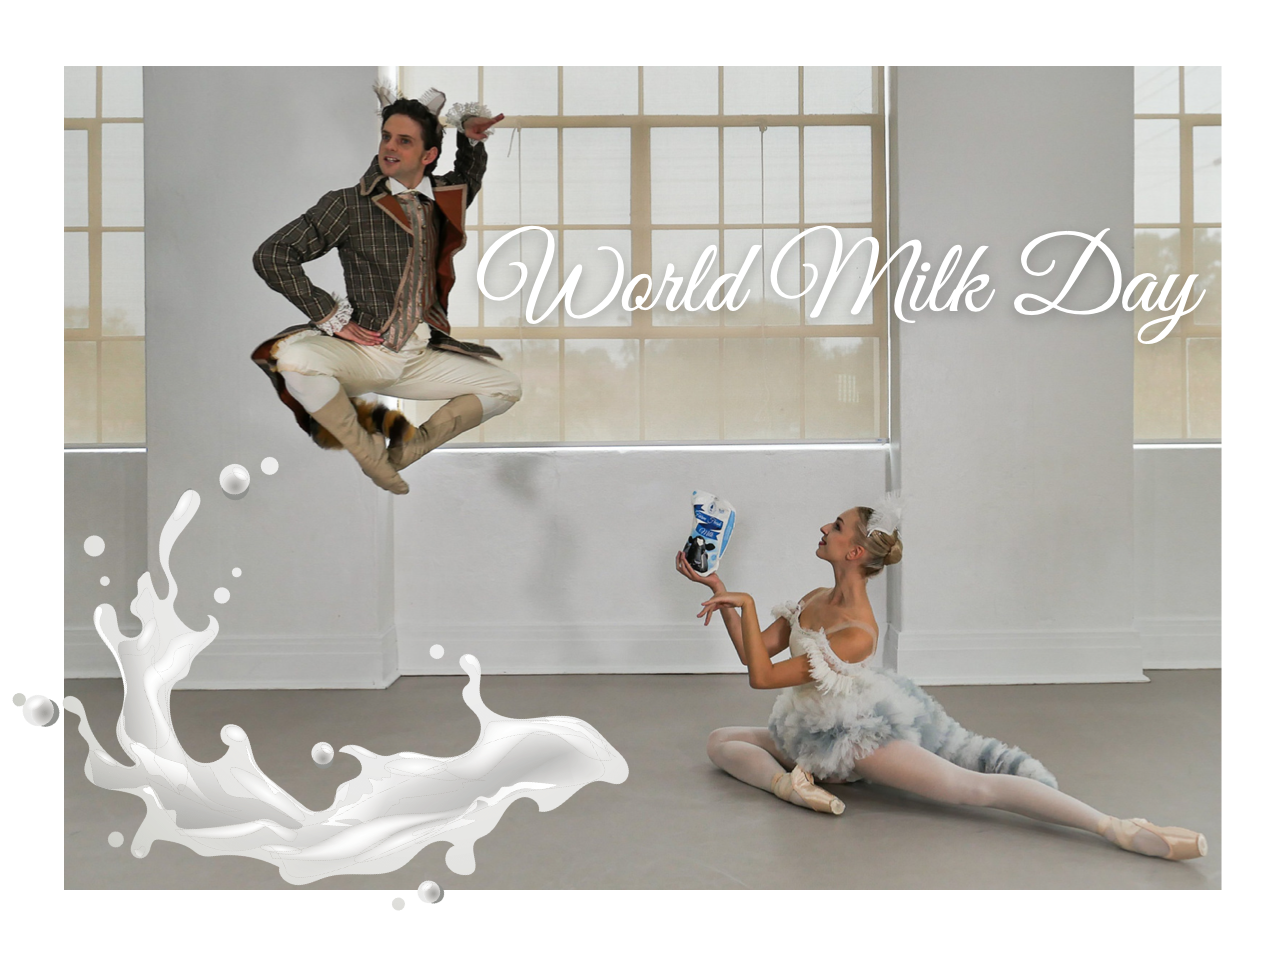 Celebrating World Milk Day